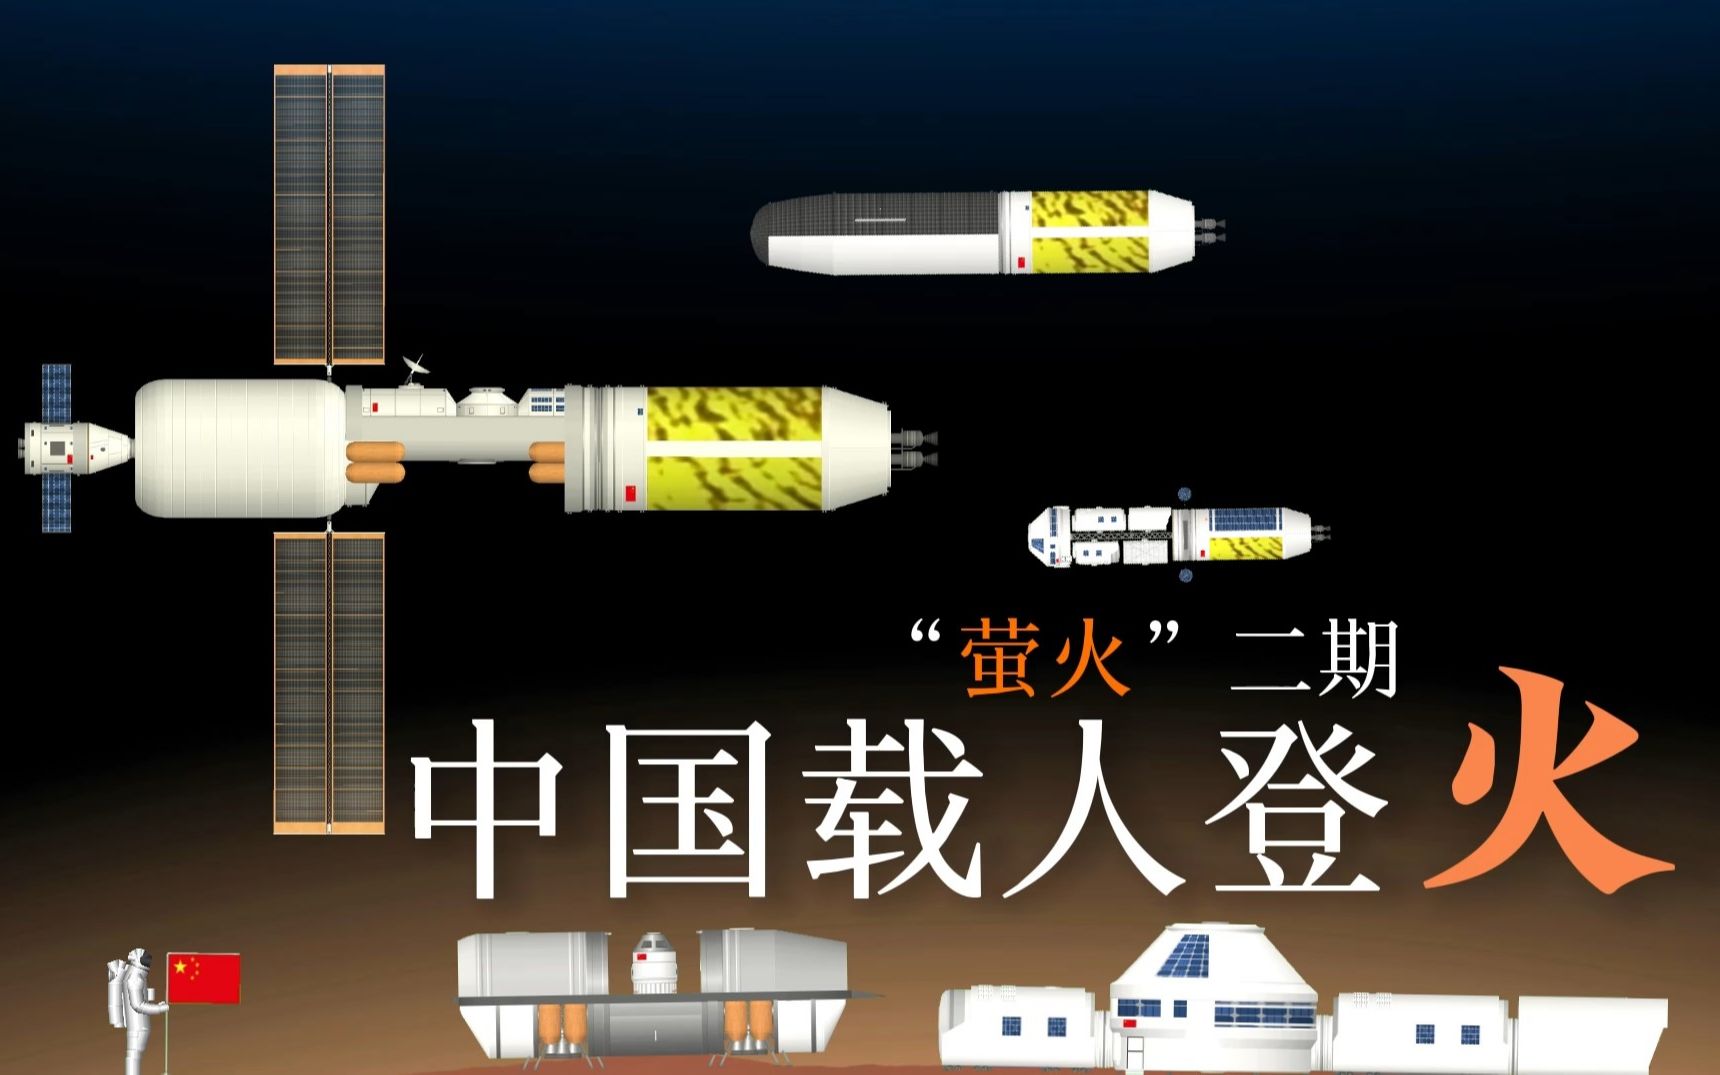 中国2049载人登火工程“荧火”二期——火星基地建设与人员驻留！